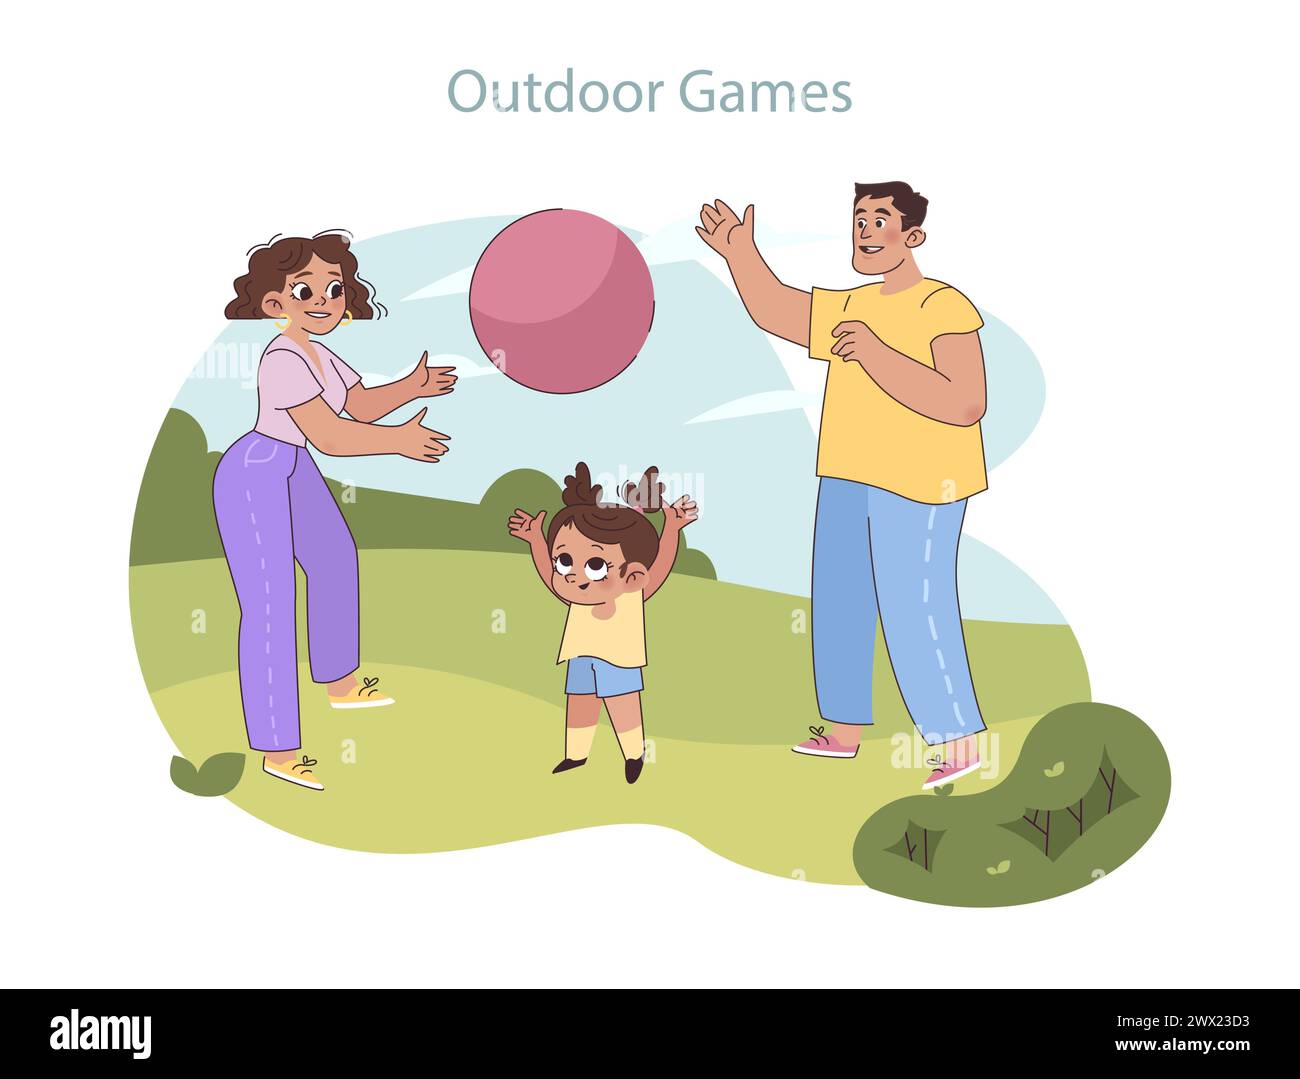 Aktives Familienset. Eltern und Kinder genießen einen lebhaften und verspielten Tag im Park, während sie die Natur bei einem lebhaften Ballspiel genießen. Stock Vektor